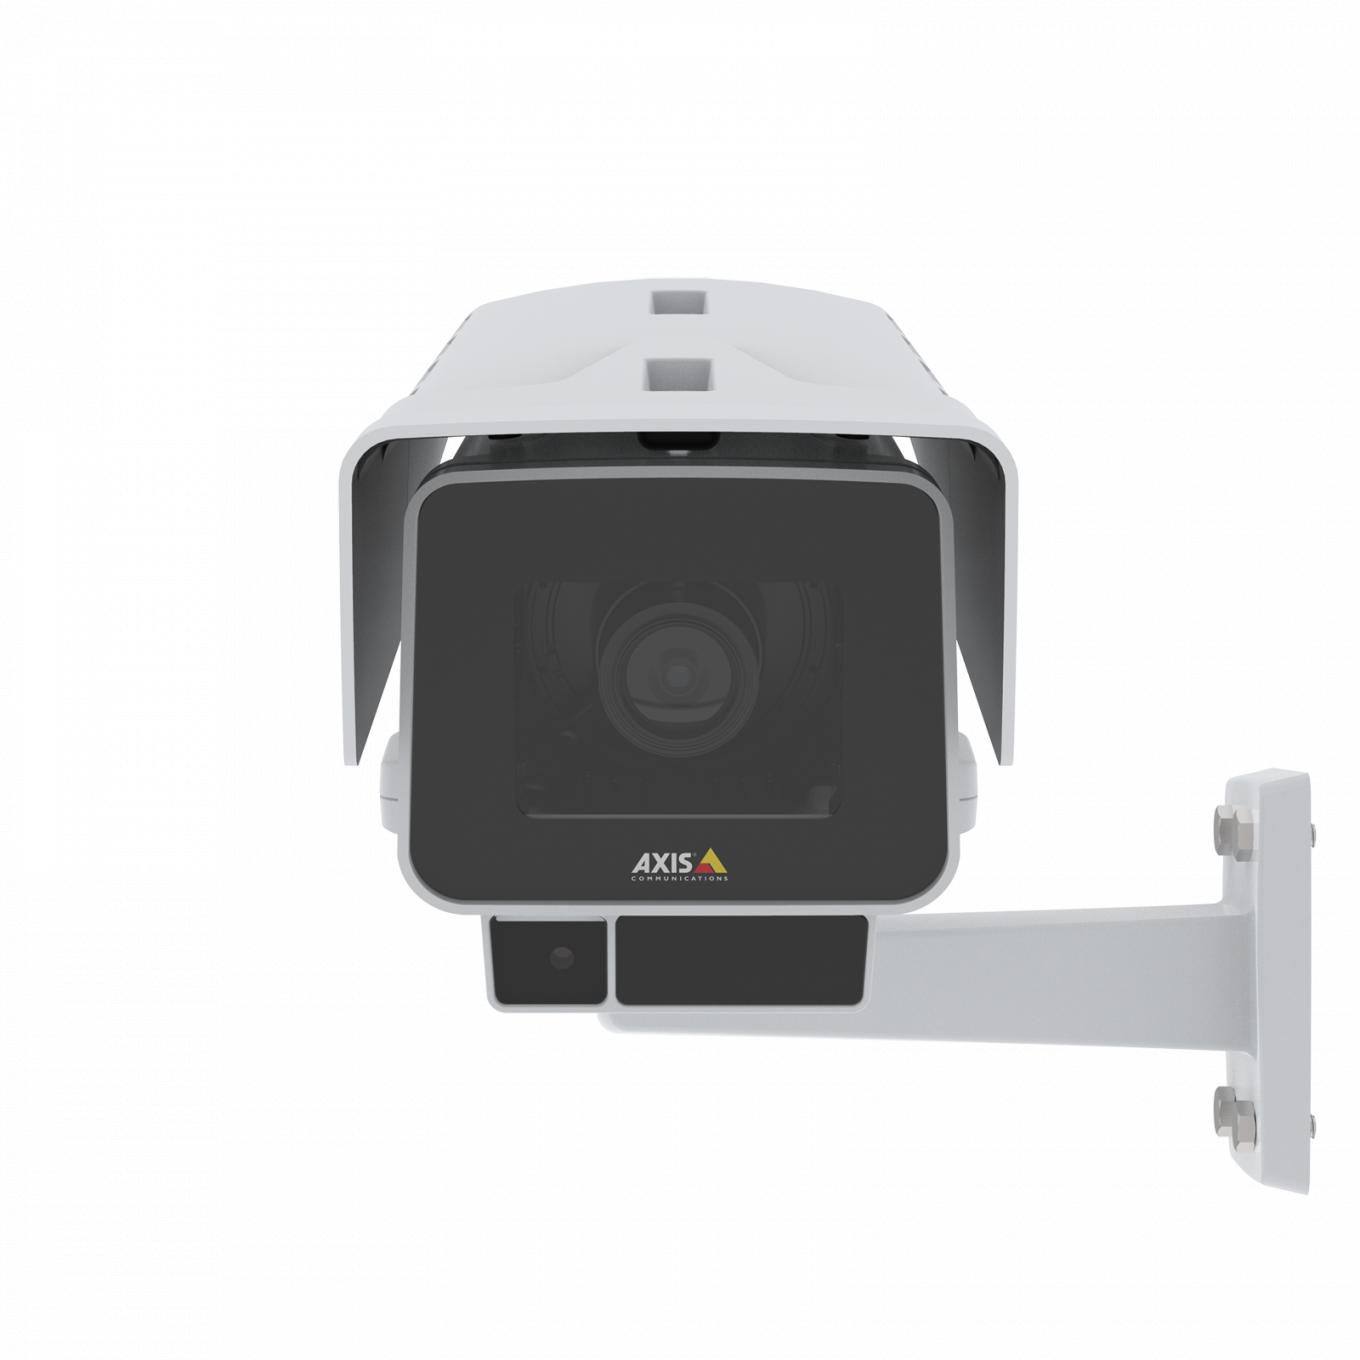 AXIS P1378-LE IP Camera ma elektroniczną stabilizację obrazu i OptimizedIR. Widok produktu z przodu.